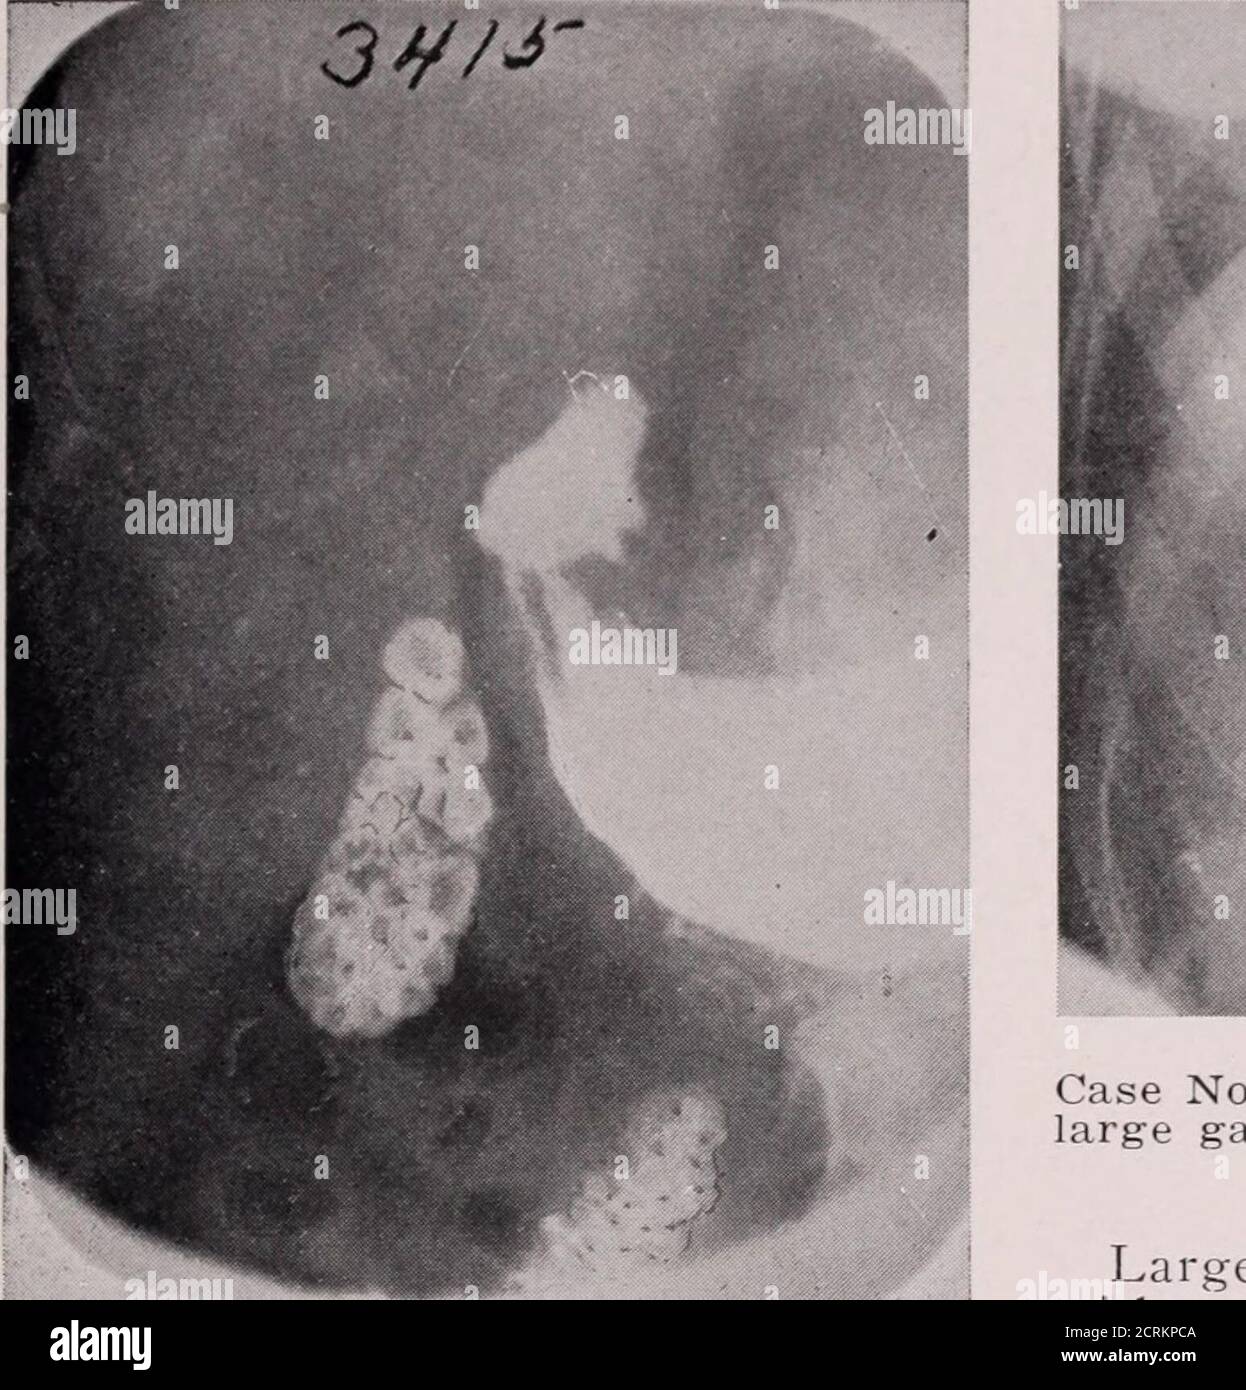 Journal de radiologie . Cas no 1416—une grosse pierre à Galle est  illustrée, cinq plus petites aussi, d'une manière immoqueuse à droite d'une  grosse pierre. Notez la présure de la vésicule